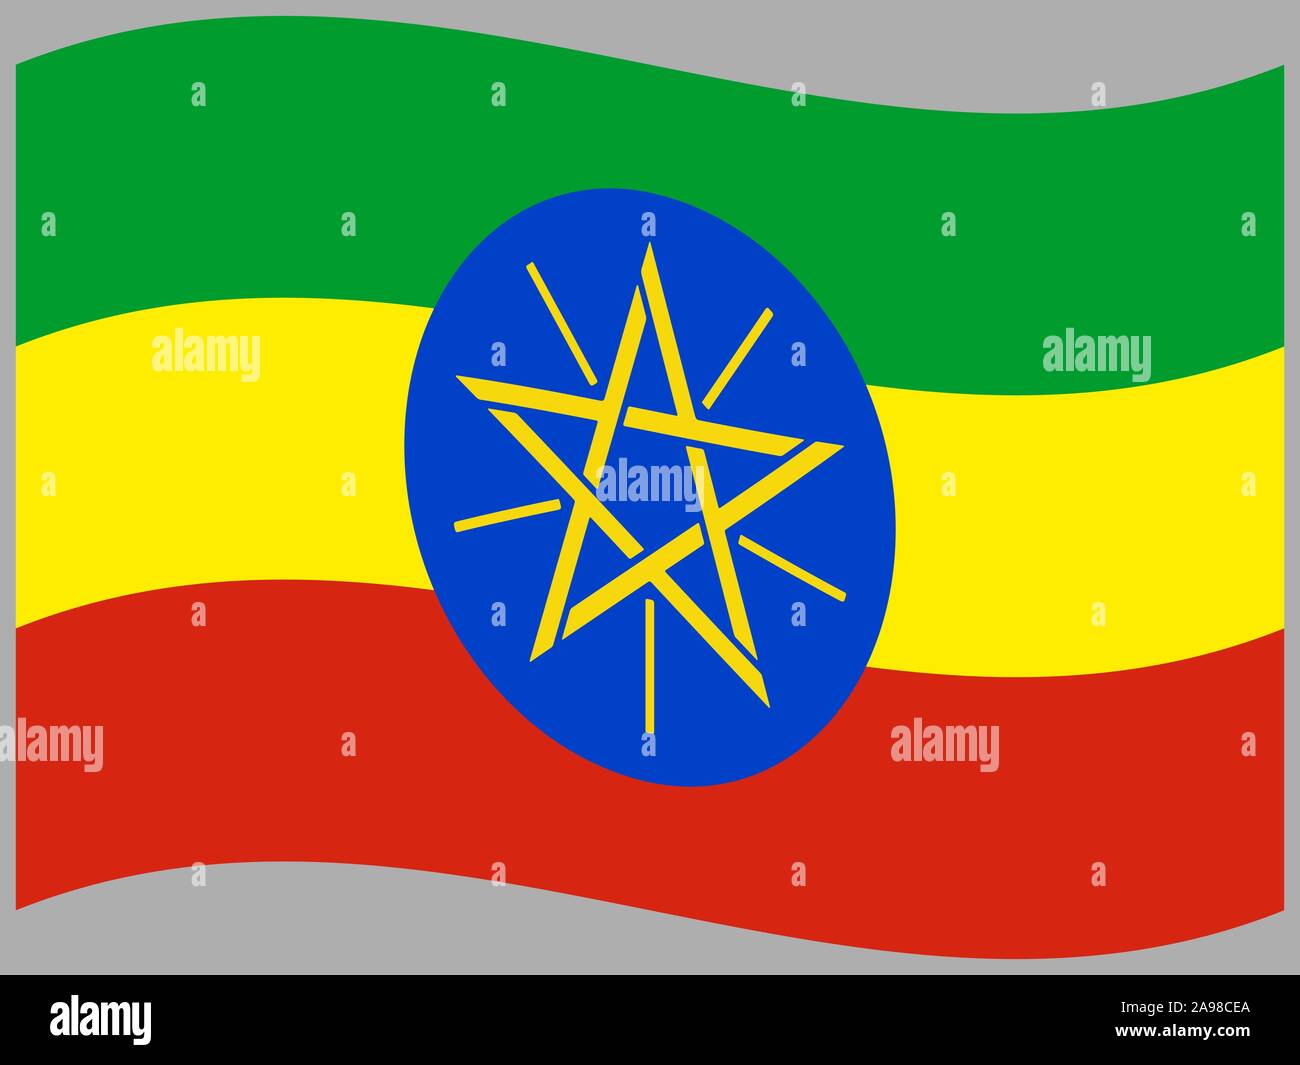 Drapeau national de la République fédérale démocratique d'Éthiopie. couleurs d'origine et de proportion. Vector illustration eps10 simplement, en provenance de pays. Illustration de Vecteur